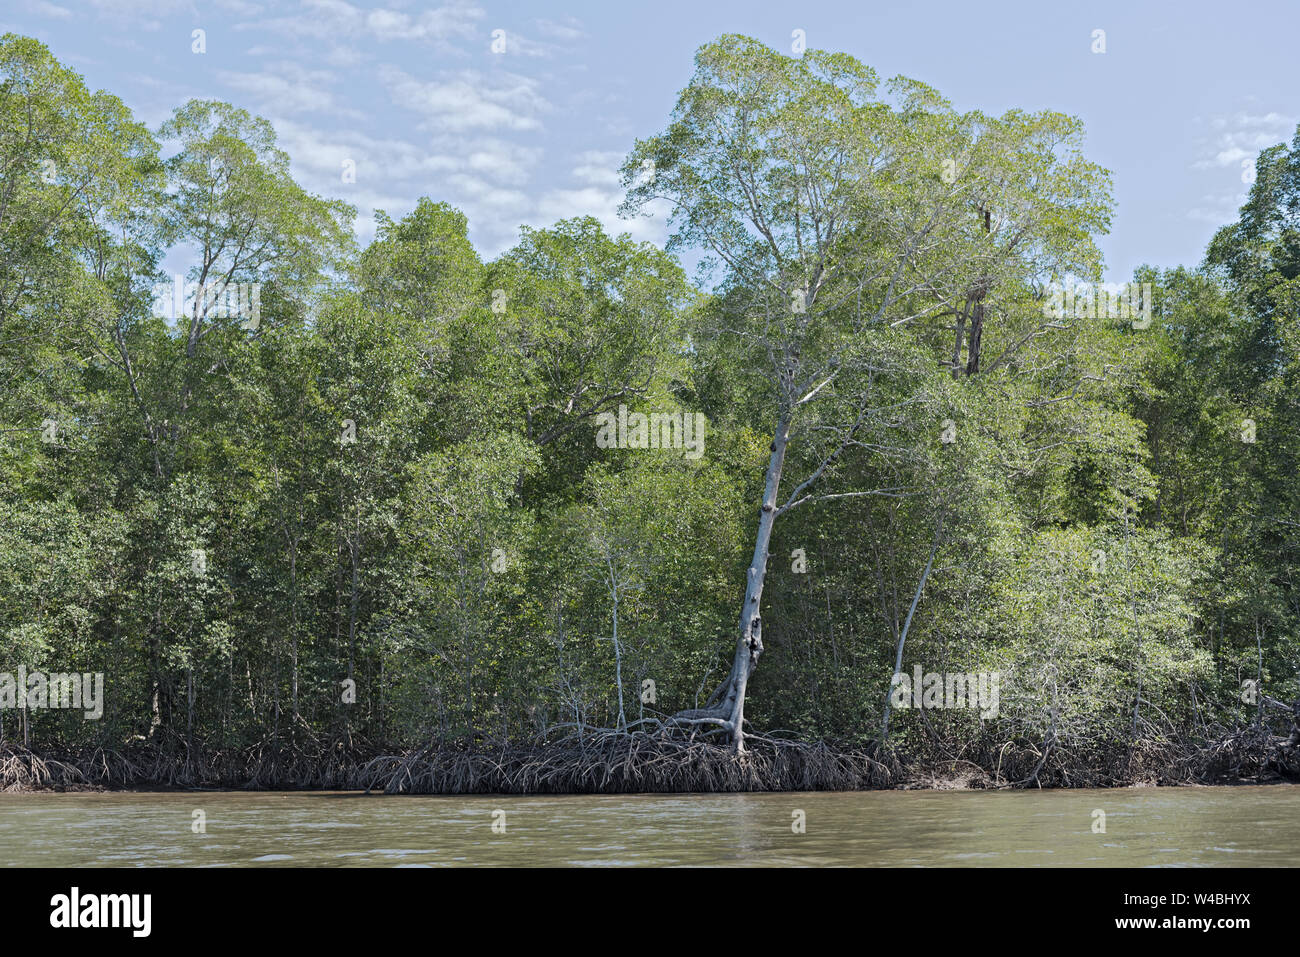 La foresta di mangrovie sulle rive della Bahia de los Muertos alla foce del Rio Platanal Panama Foto Stock